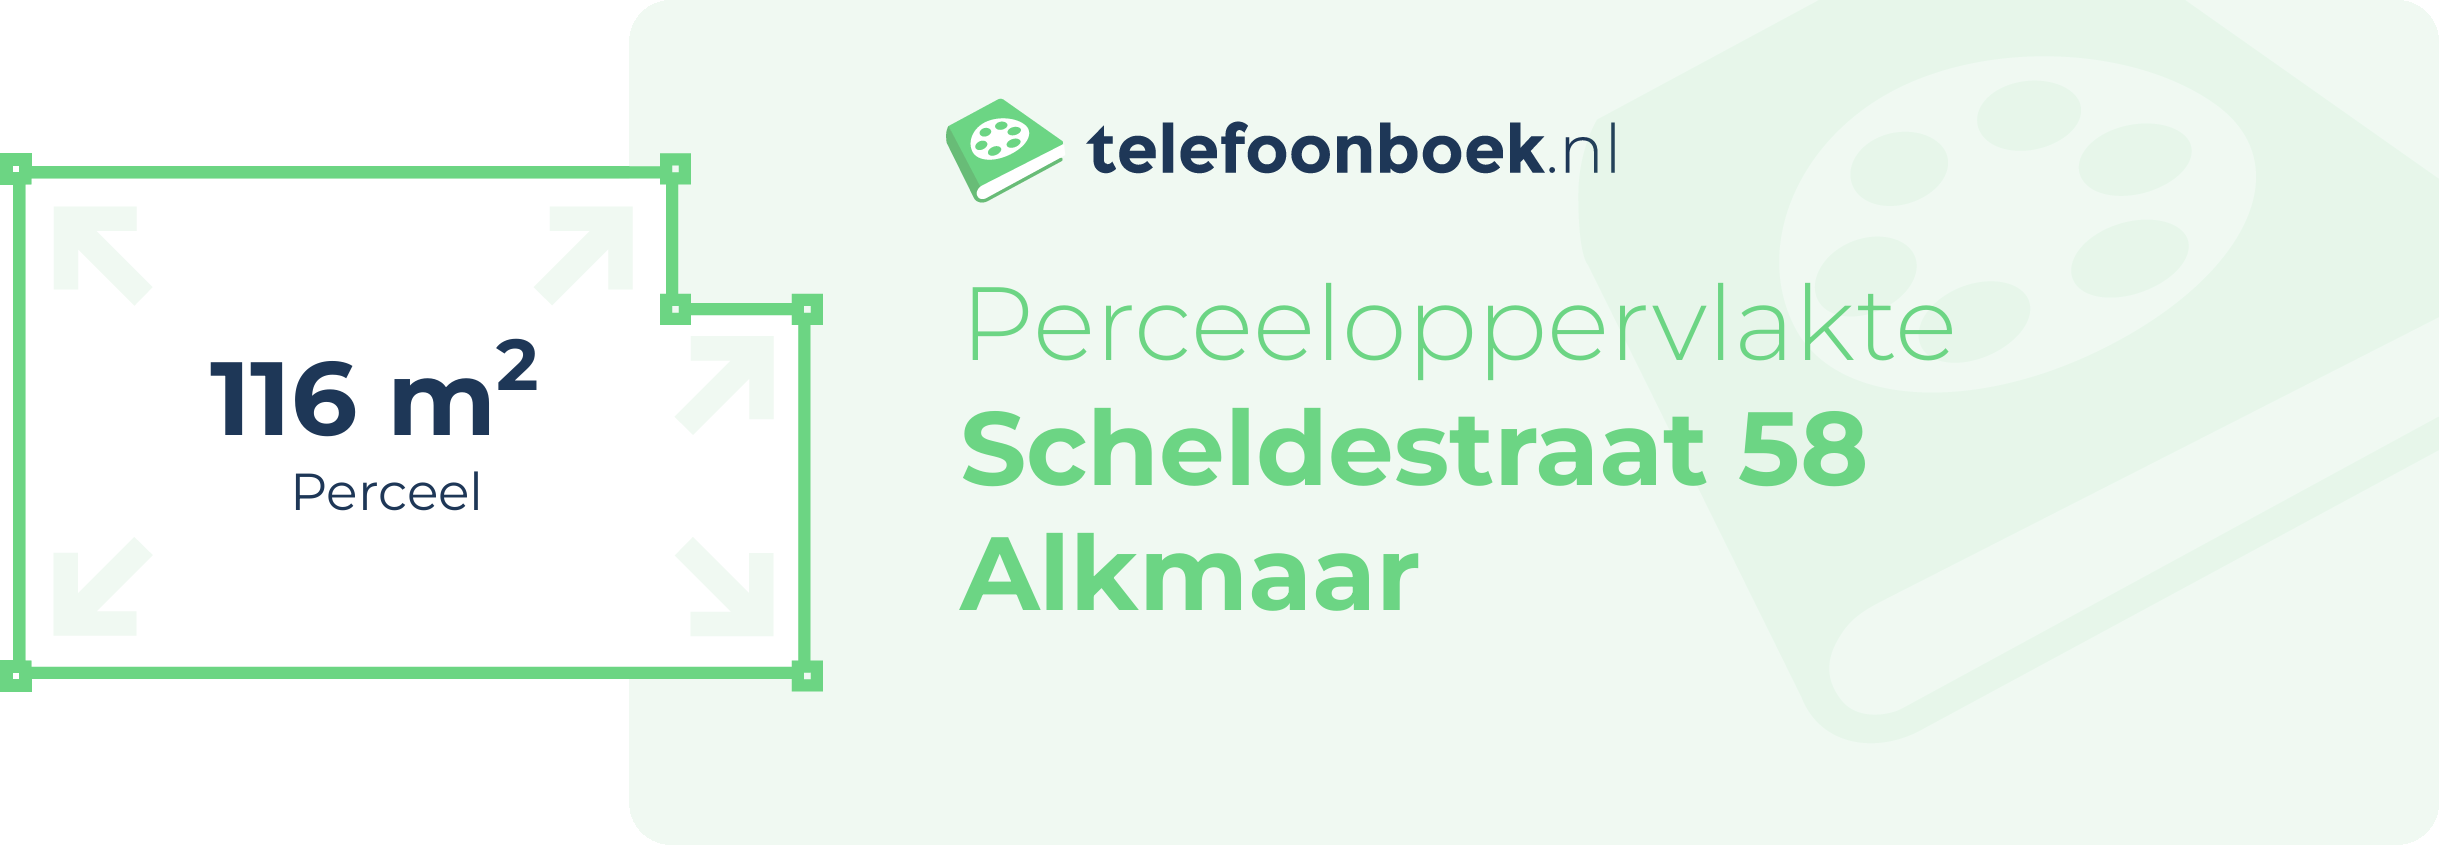 Perceeloppervlakte Scheldestraat 58 Alkmaar